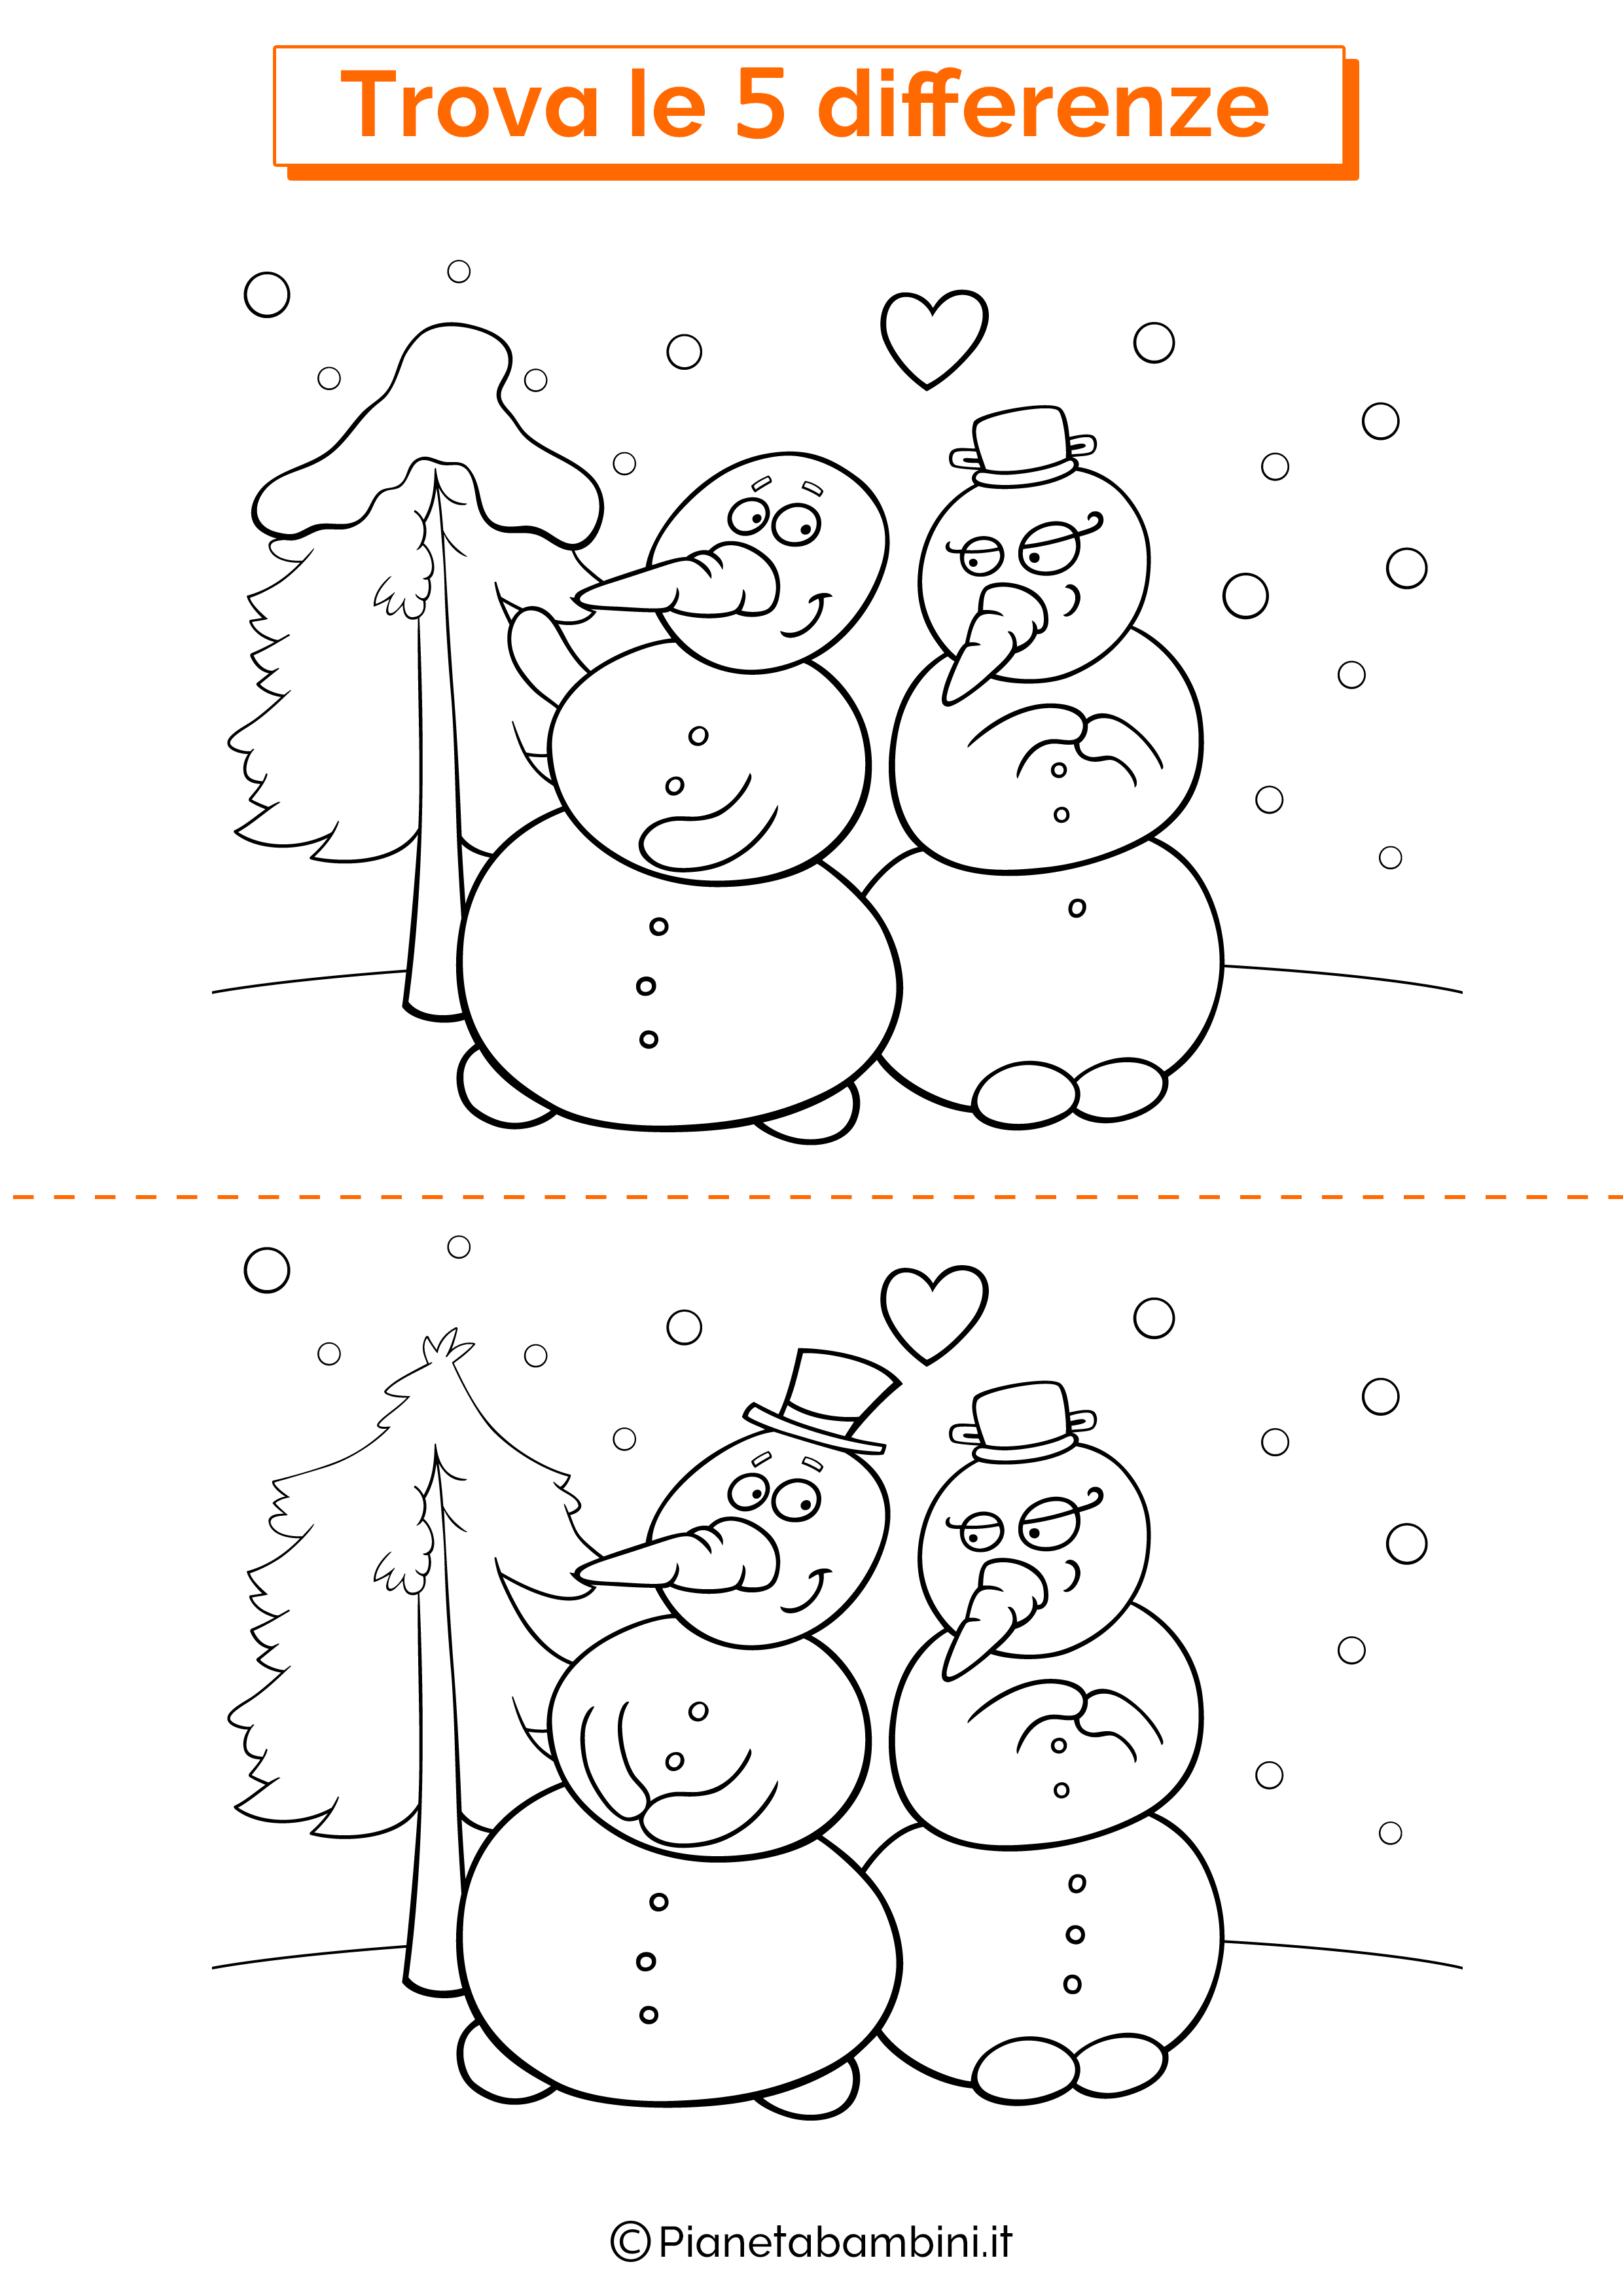 Disegno trova 5 differenze pupazzi di neve